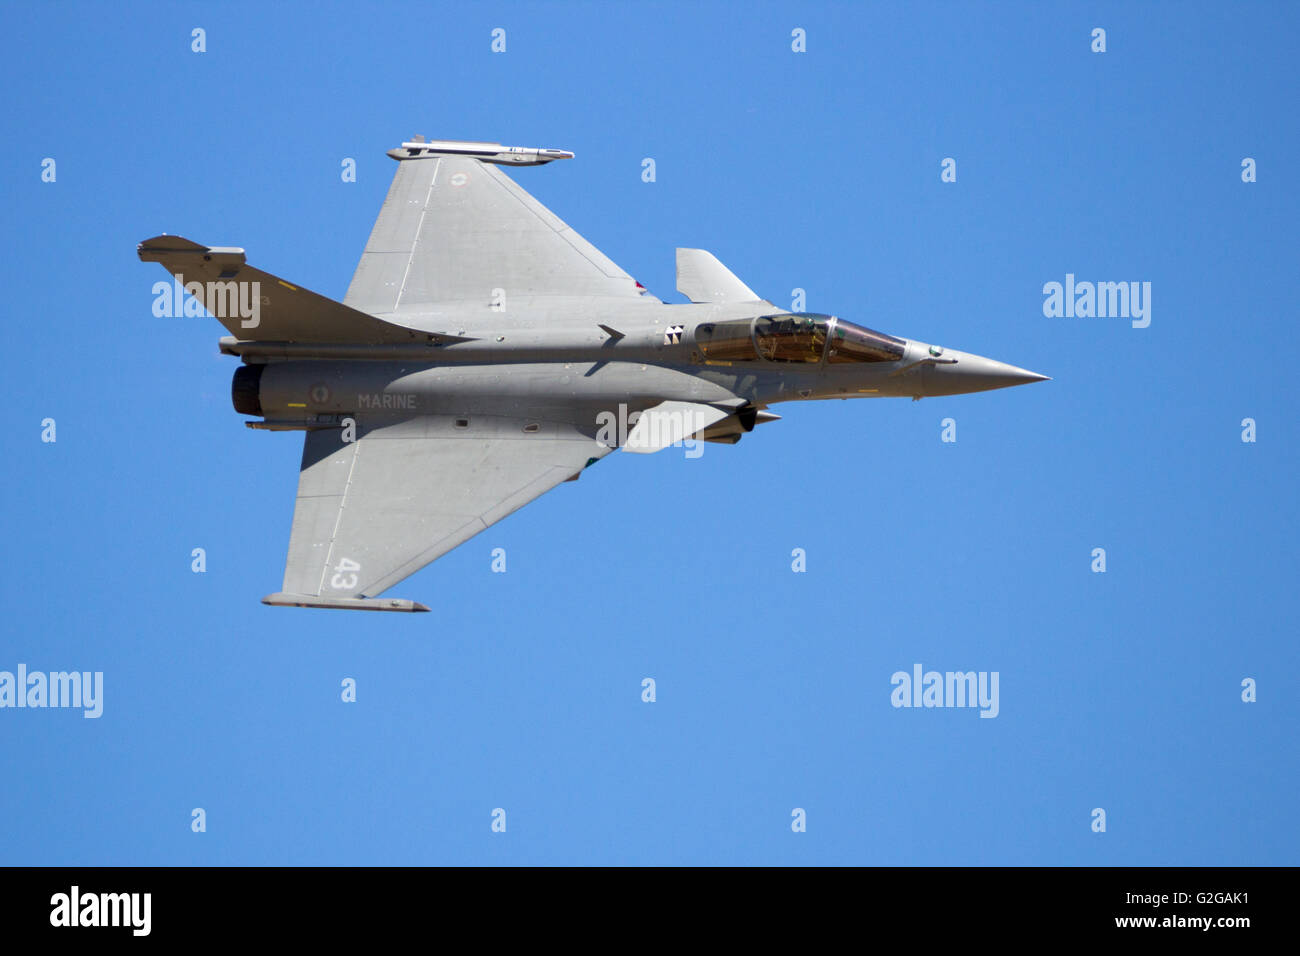 La Marine française Dassault Rafale de survol en avion de chasse sur un ciel bleu Banque D'Images